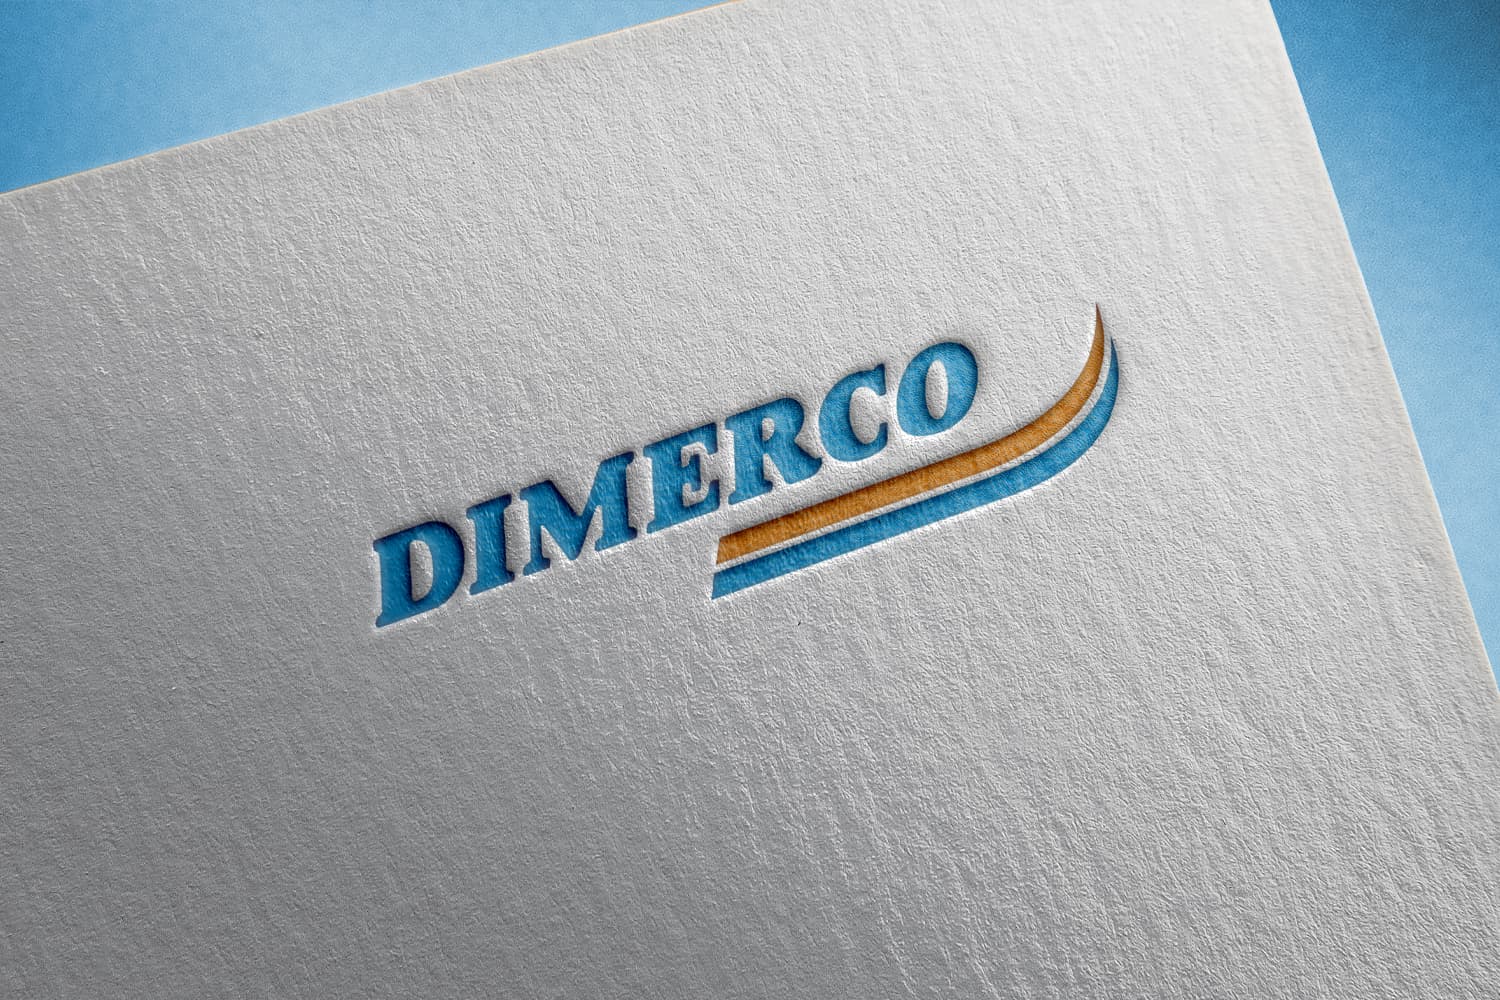 Dimerco Restructure EMB